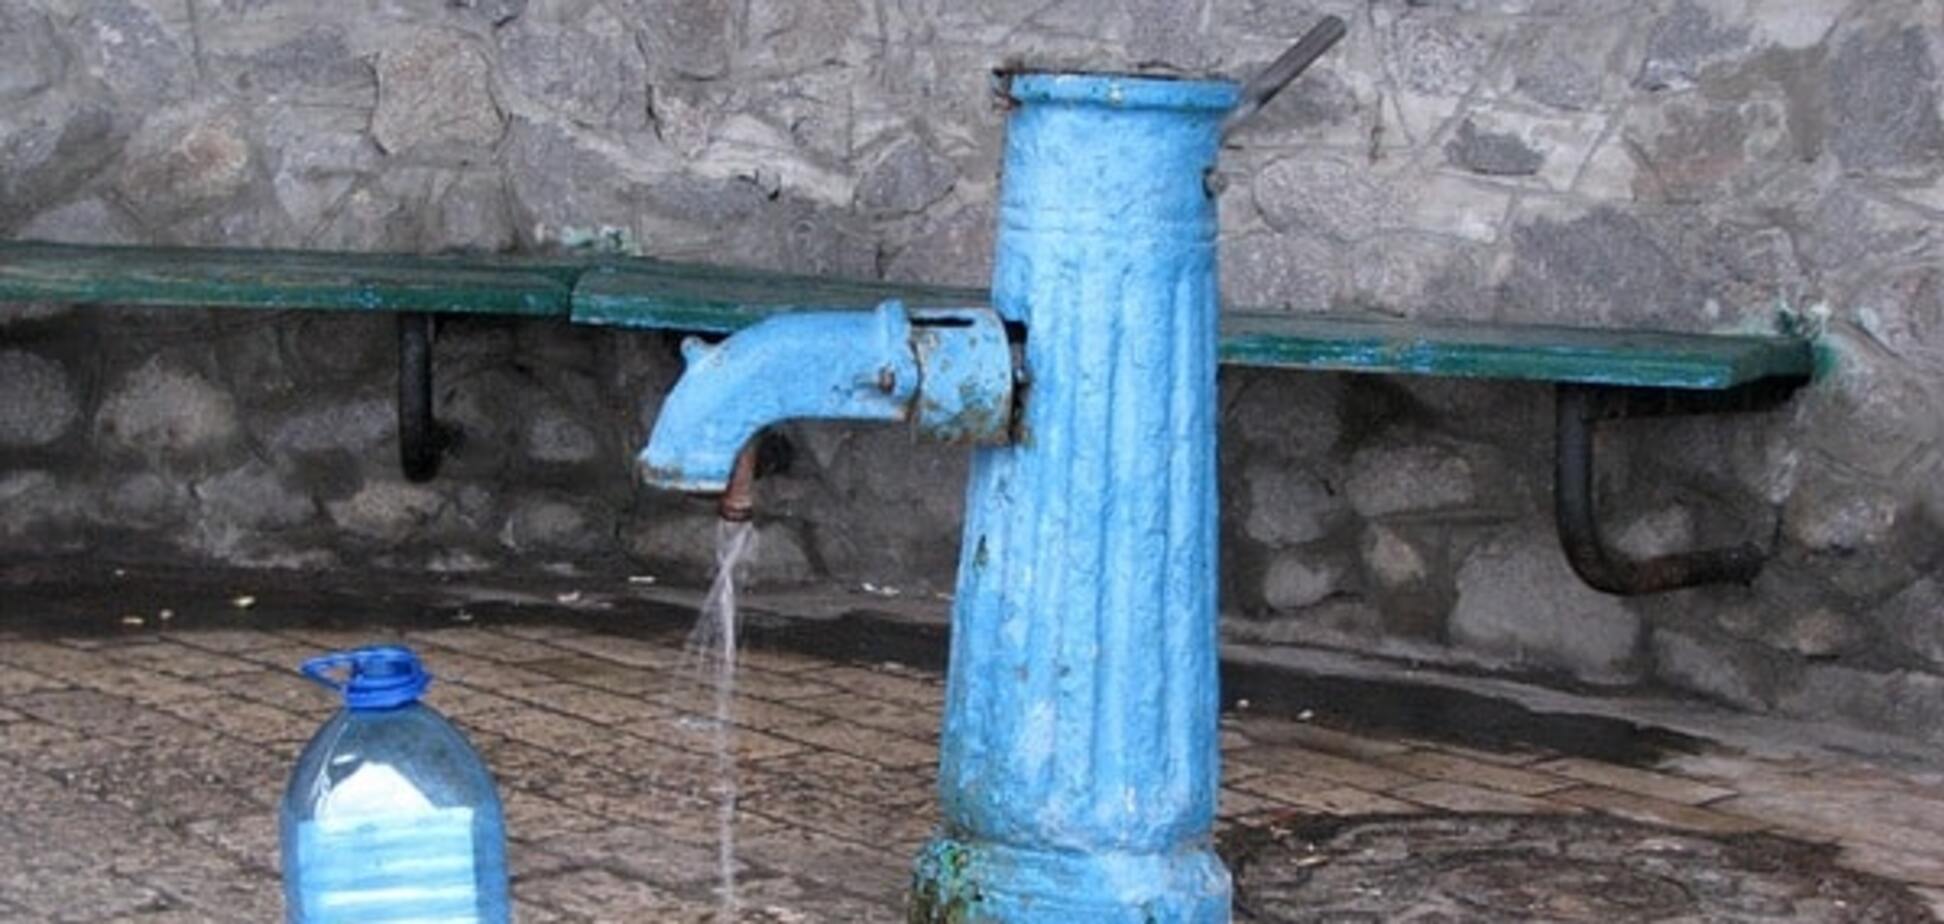 Де в Києві небезпечно пити воду: опубліковано список бюветів